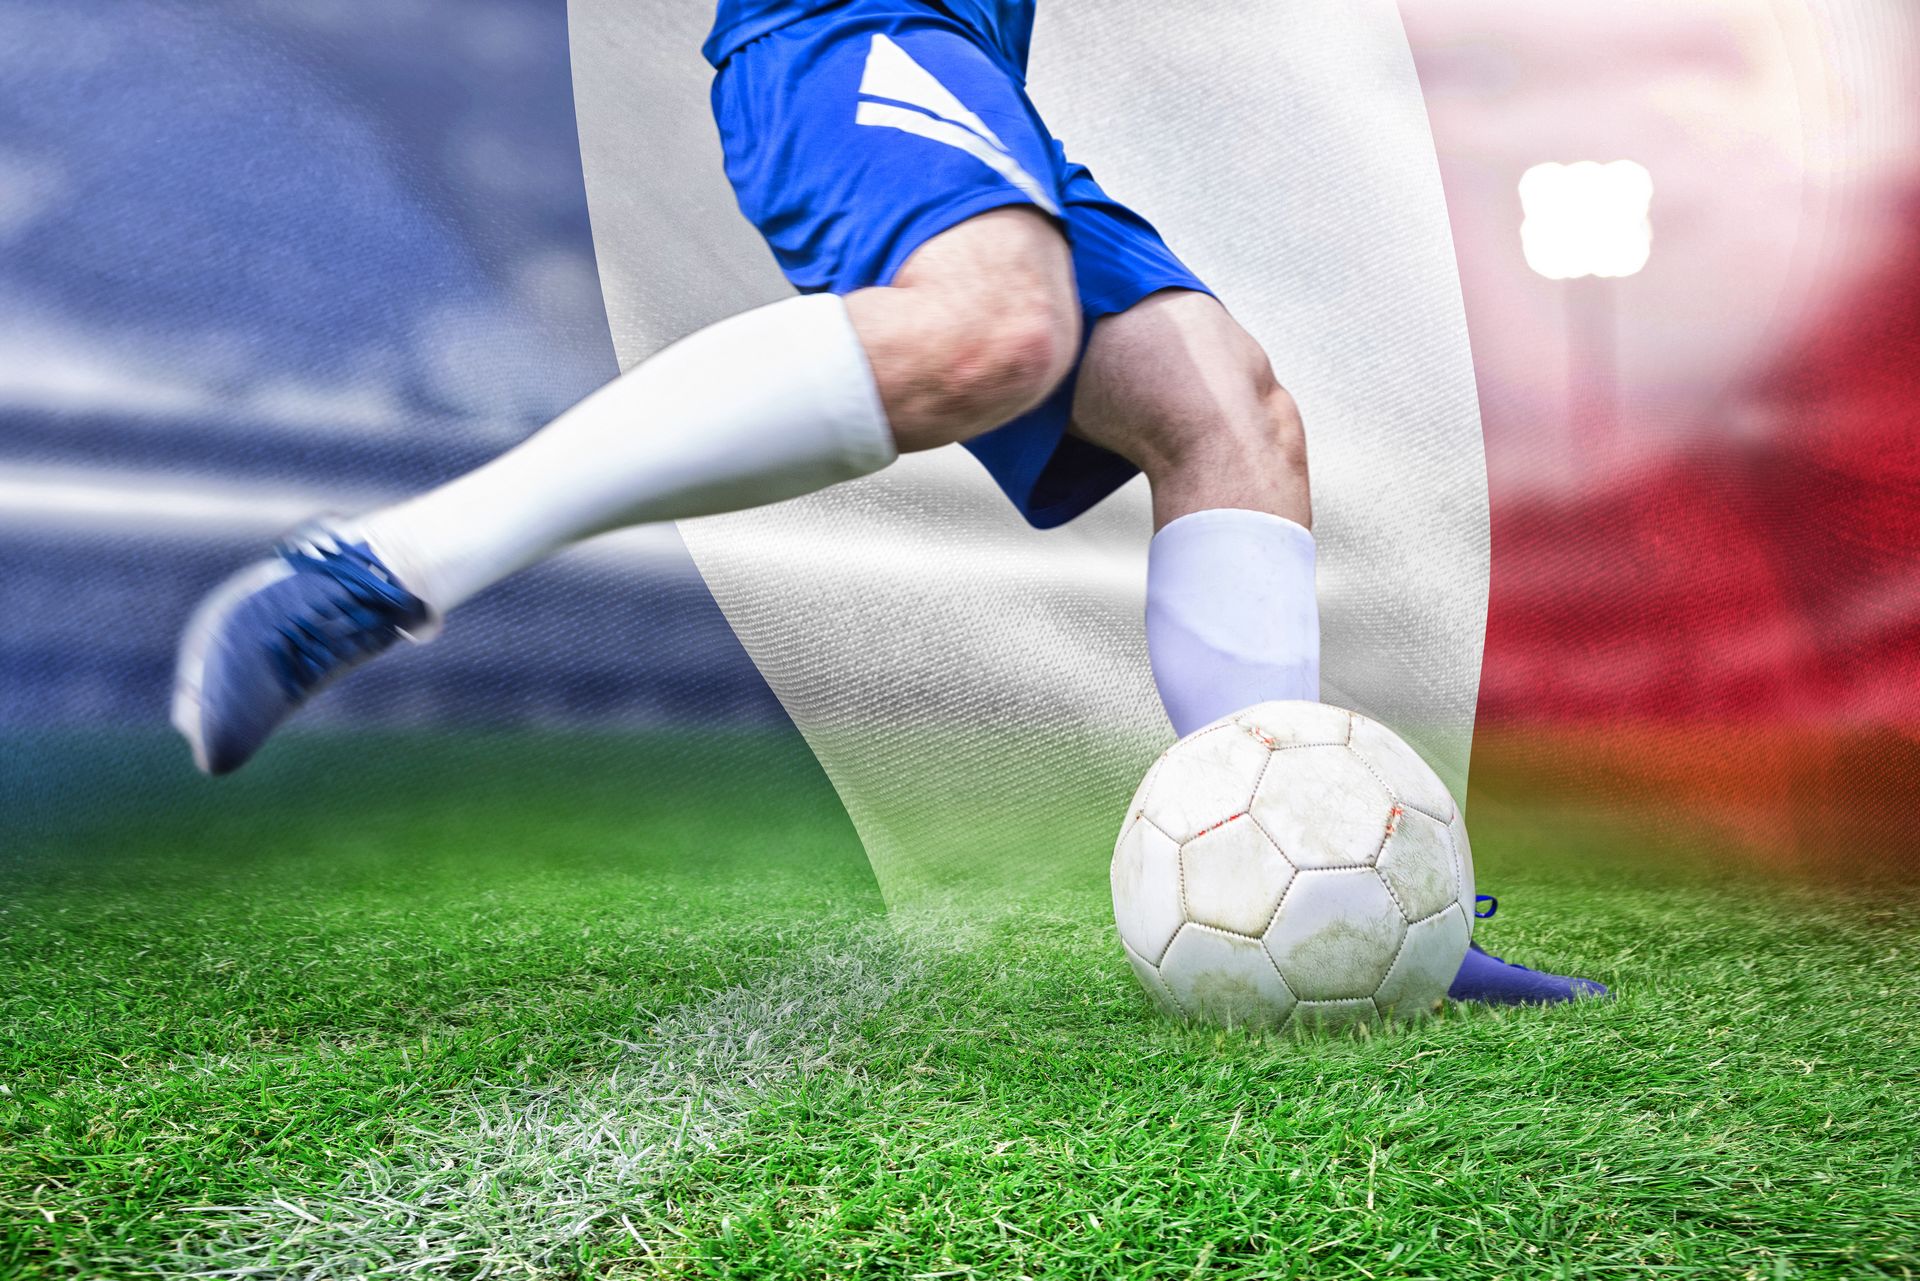 Liste des 23 pour les matchs amicaux de l'équipe de France avant le mondial au Qatar